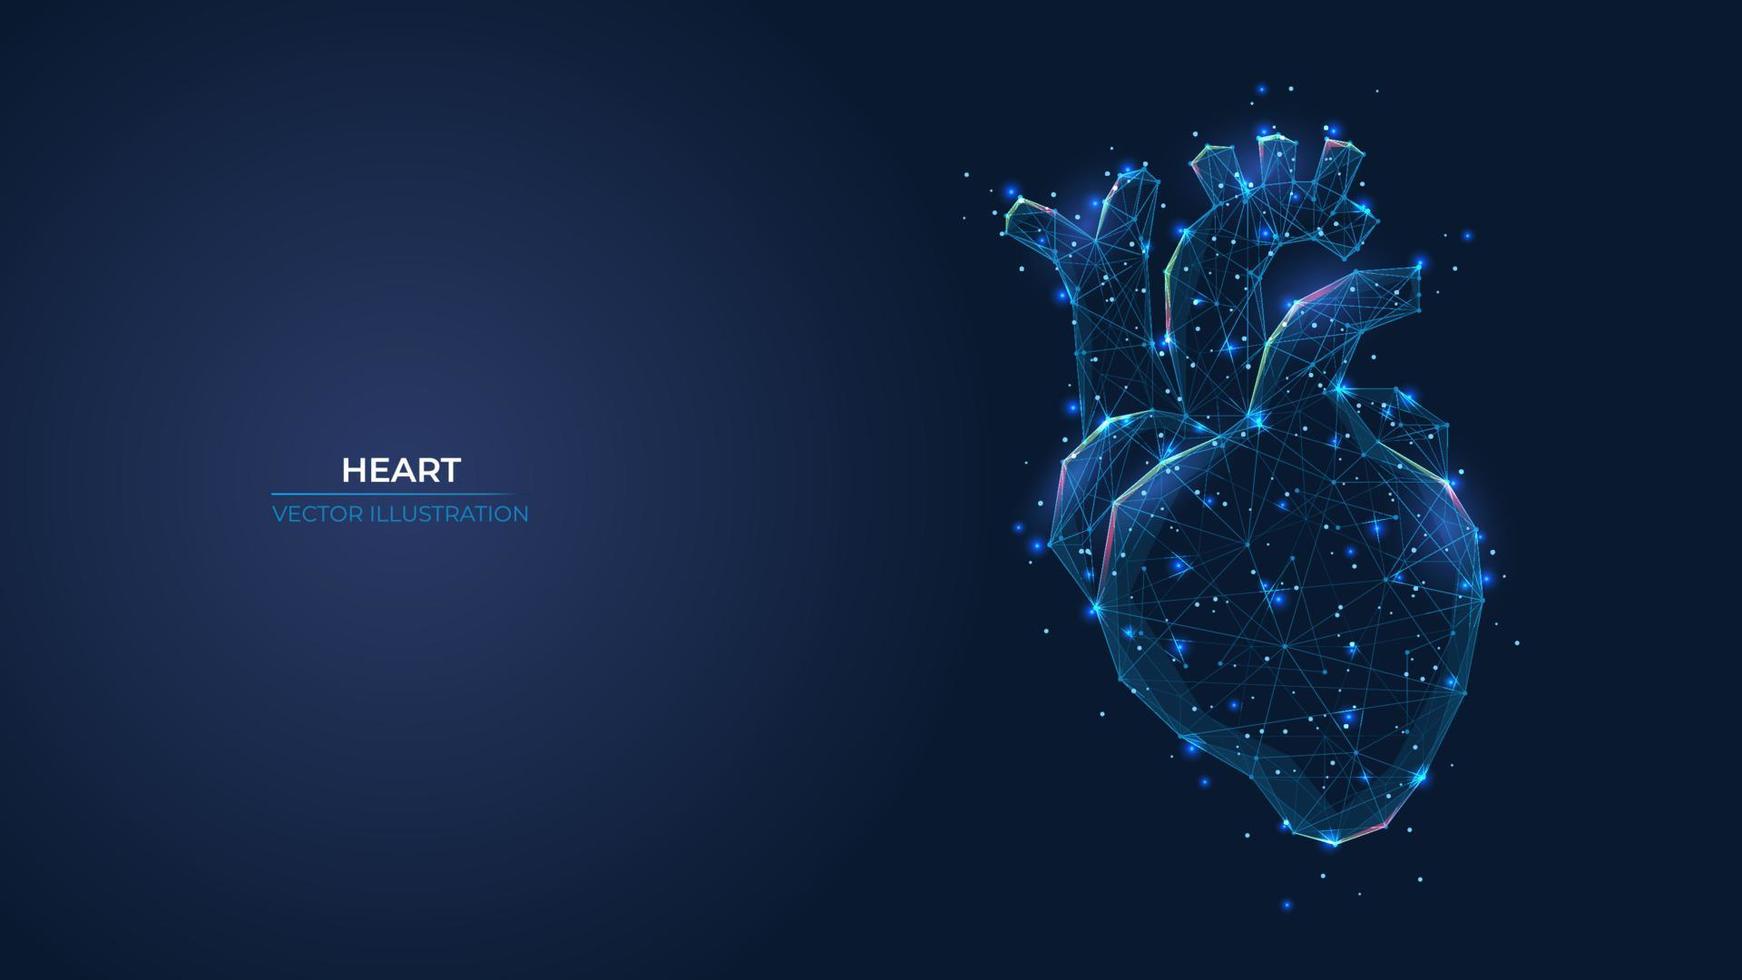 futuristische abstract symbool van de menselijk hart. blauw transplantatie, diagnostisch, vernieuwend geneeskunde concept. laag poly meetkundig 3d behang achtergrond vector illustratie.